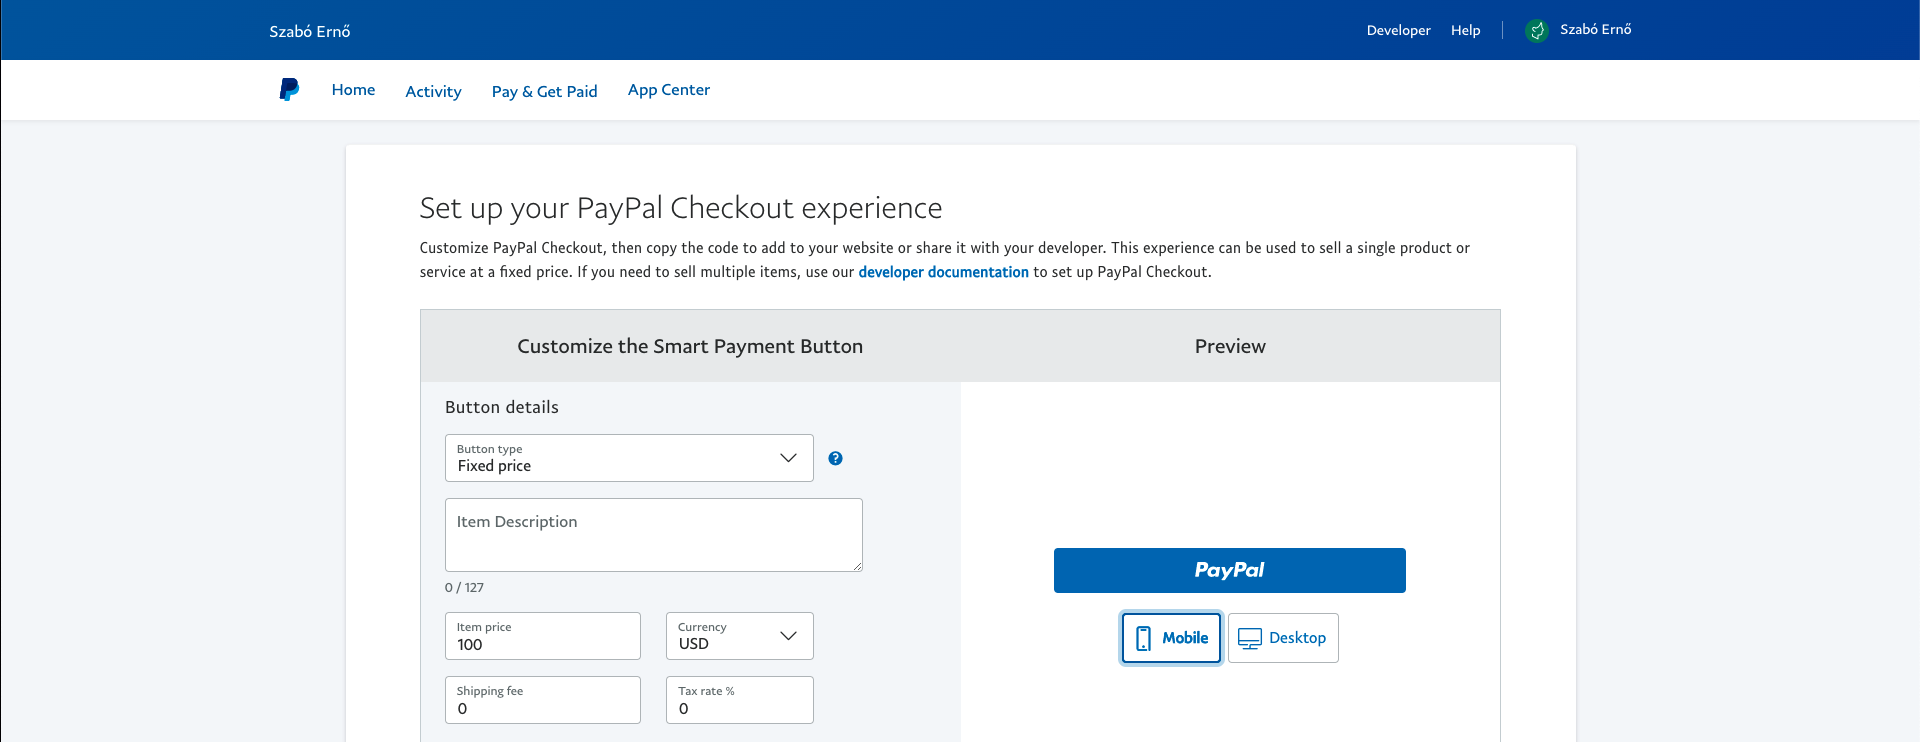 PayPal Button Details